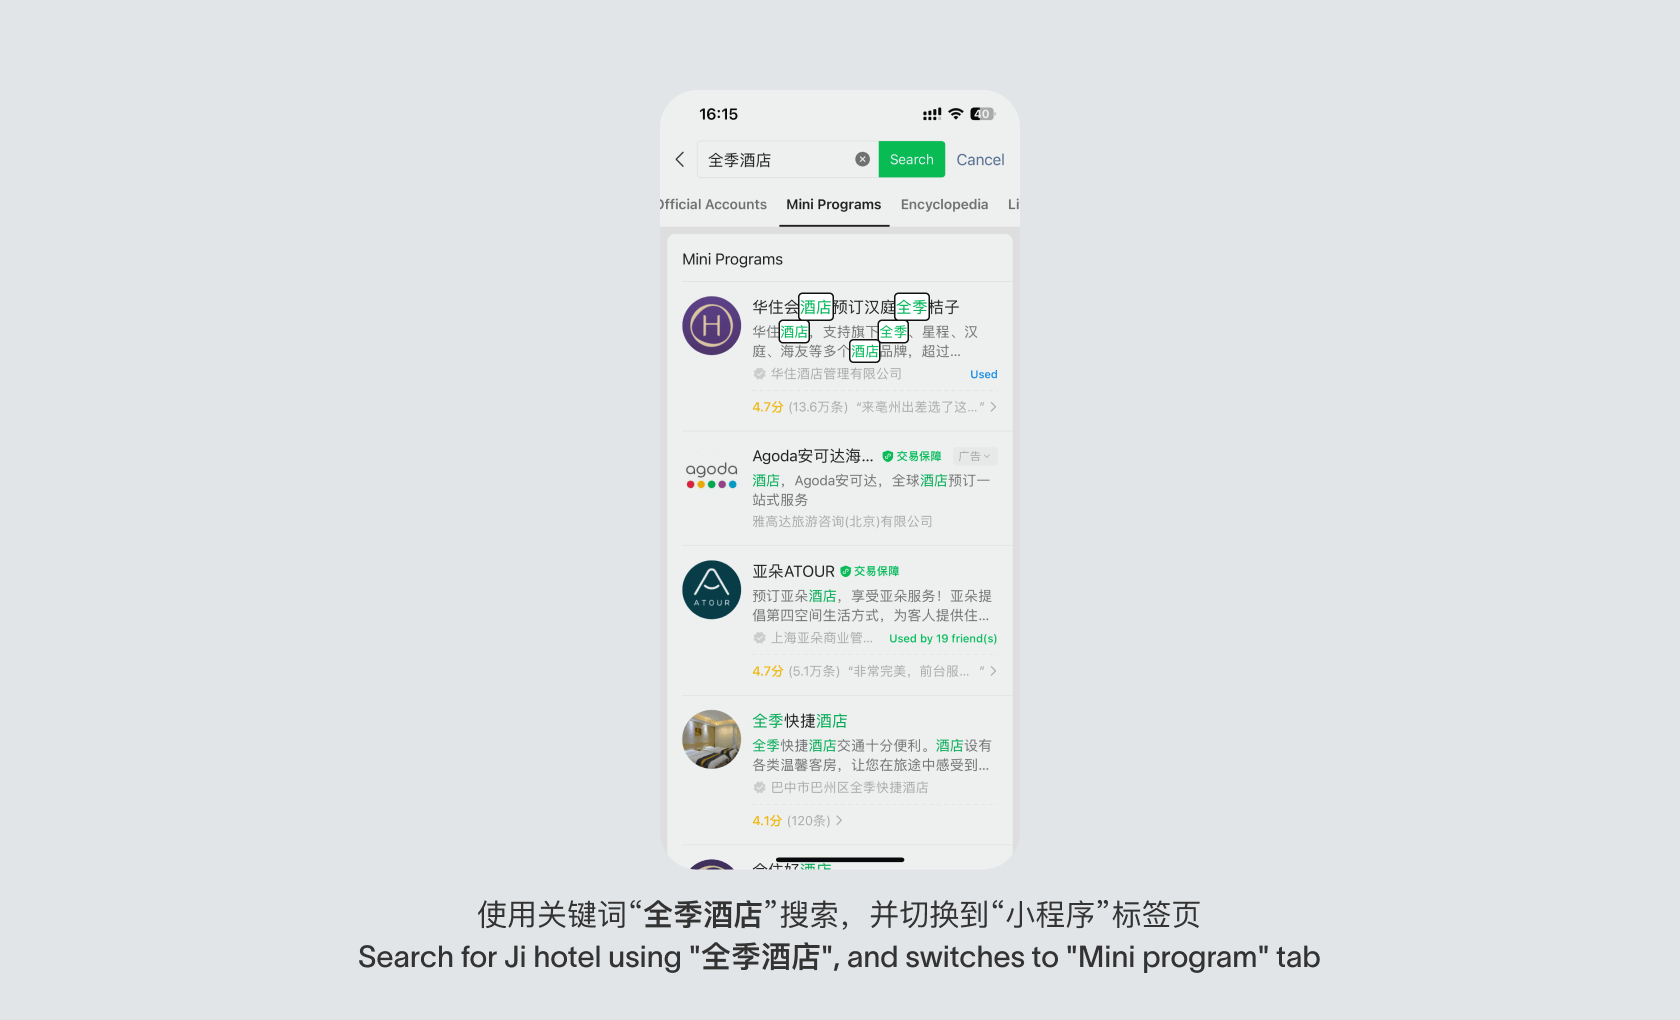 WeChat mini program discoverability through search